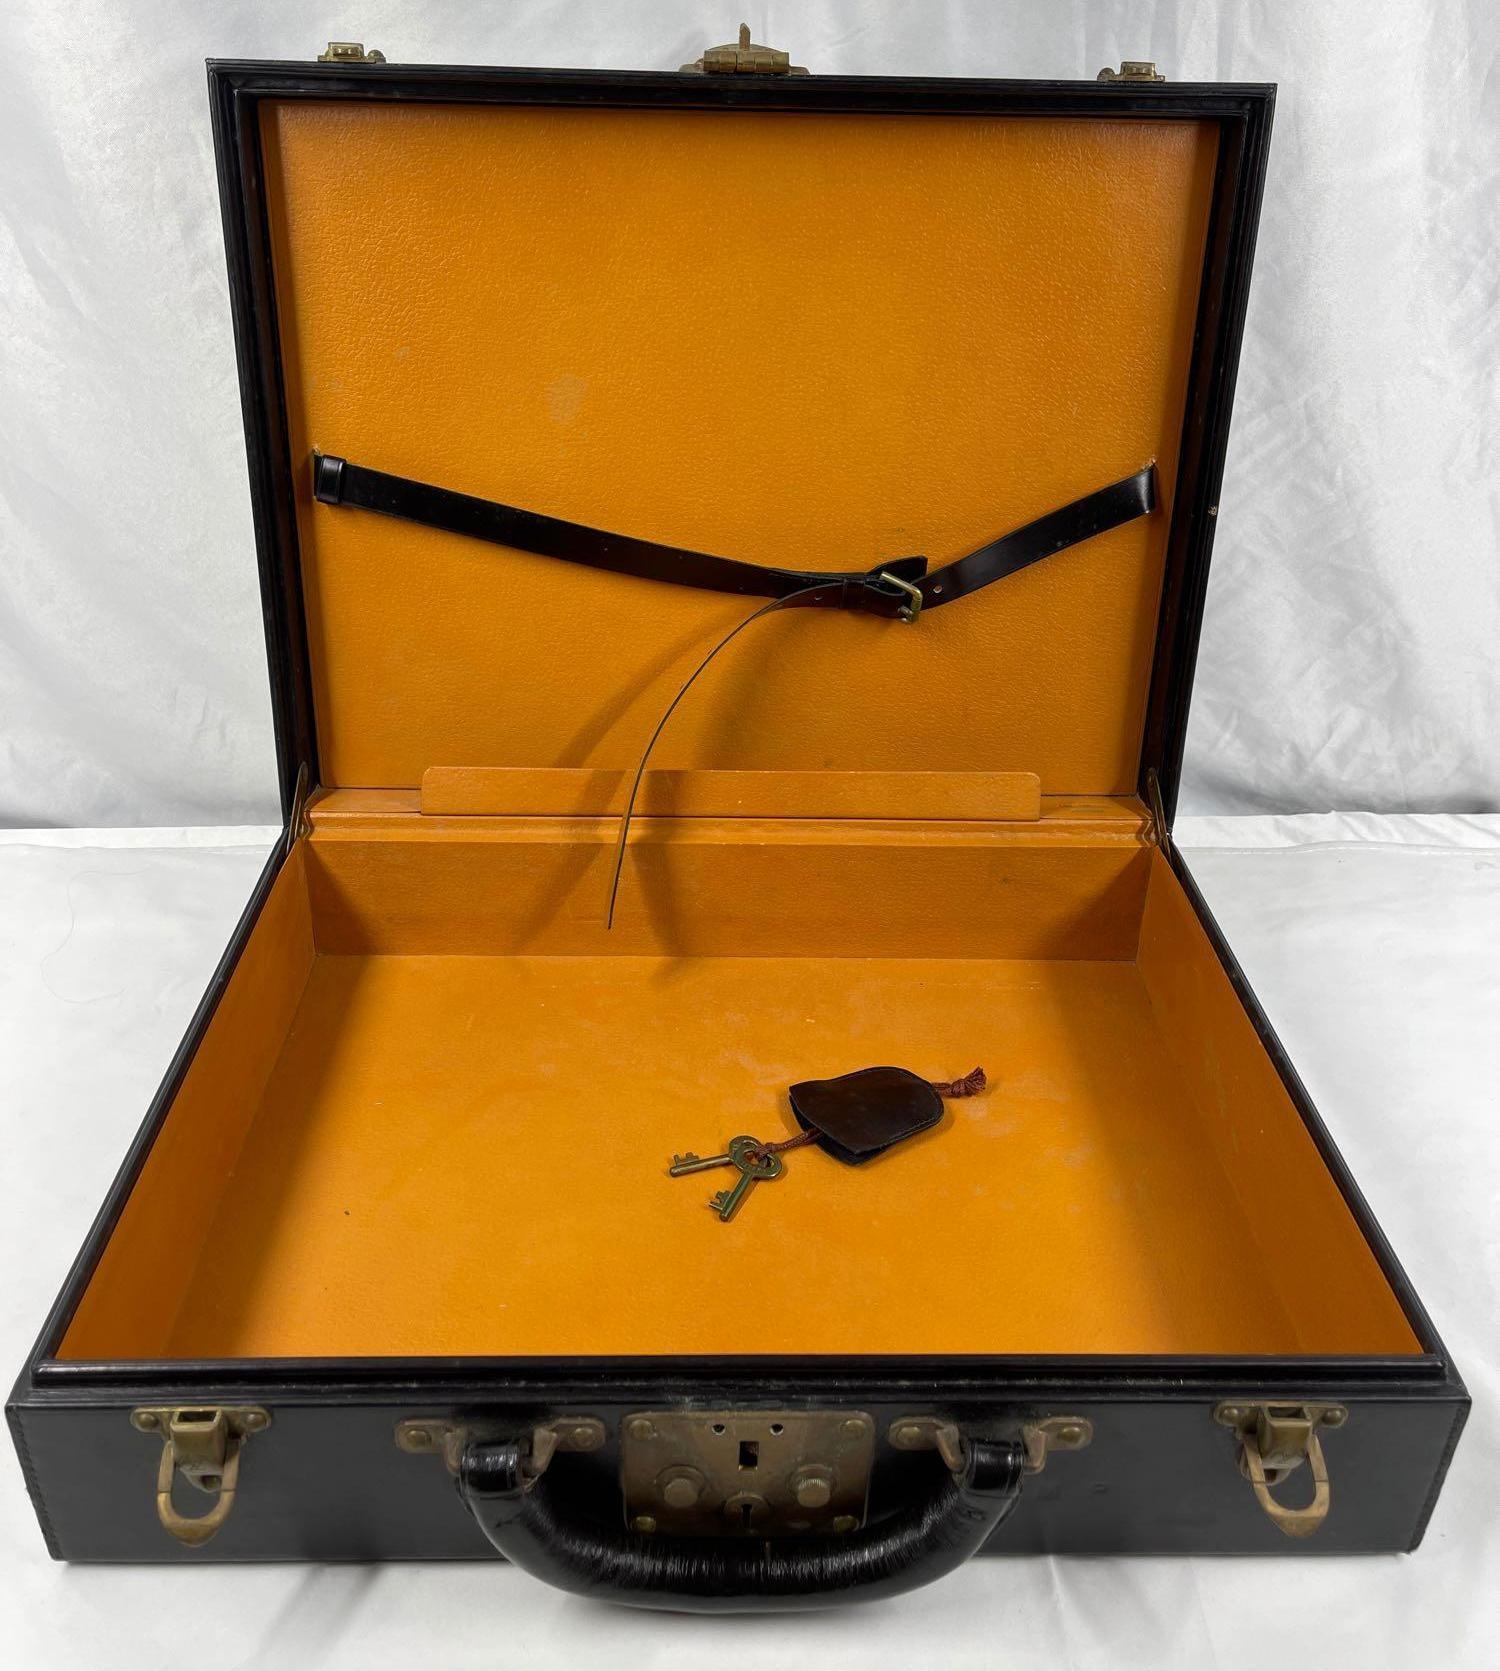 Sold at Auction: Louis Vuitton Black Leather Attache Case, Vintage